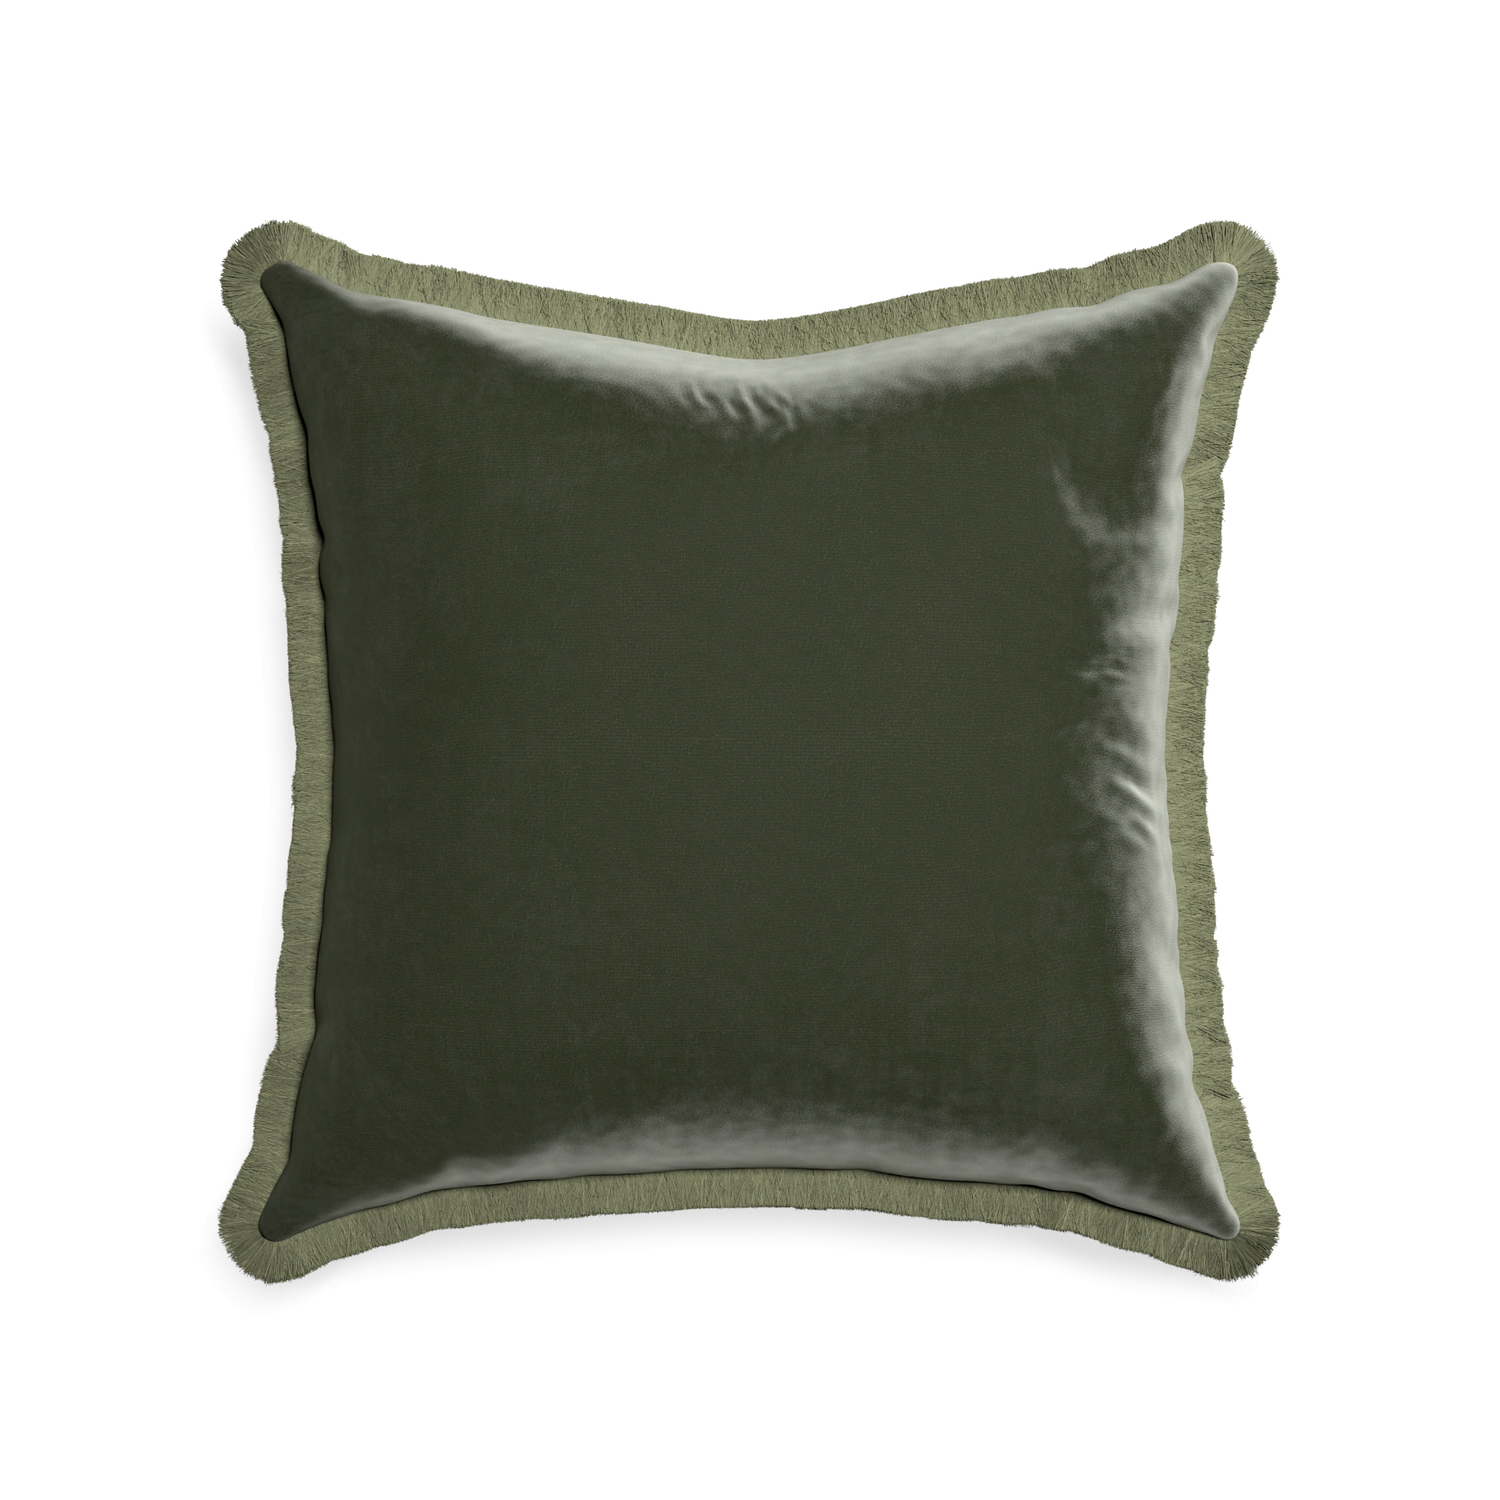 22-square fern velvet custom pillow with sage fringe on white background